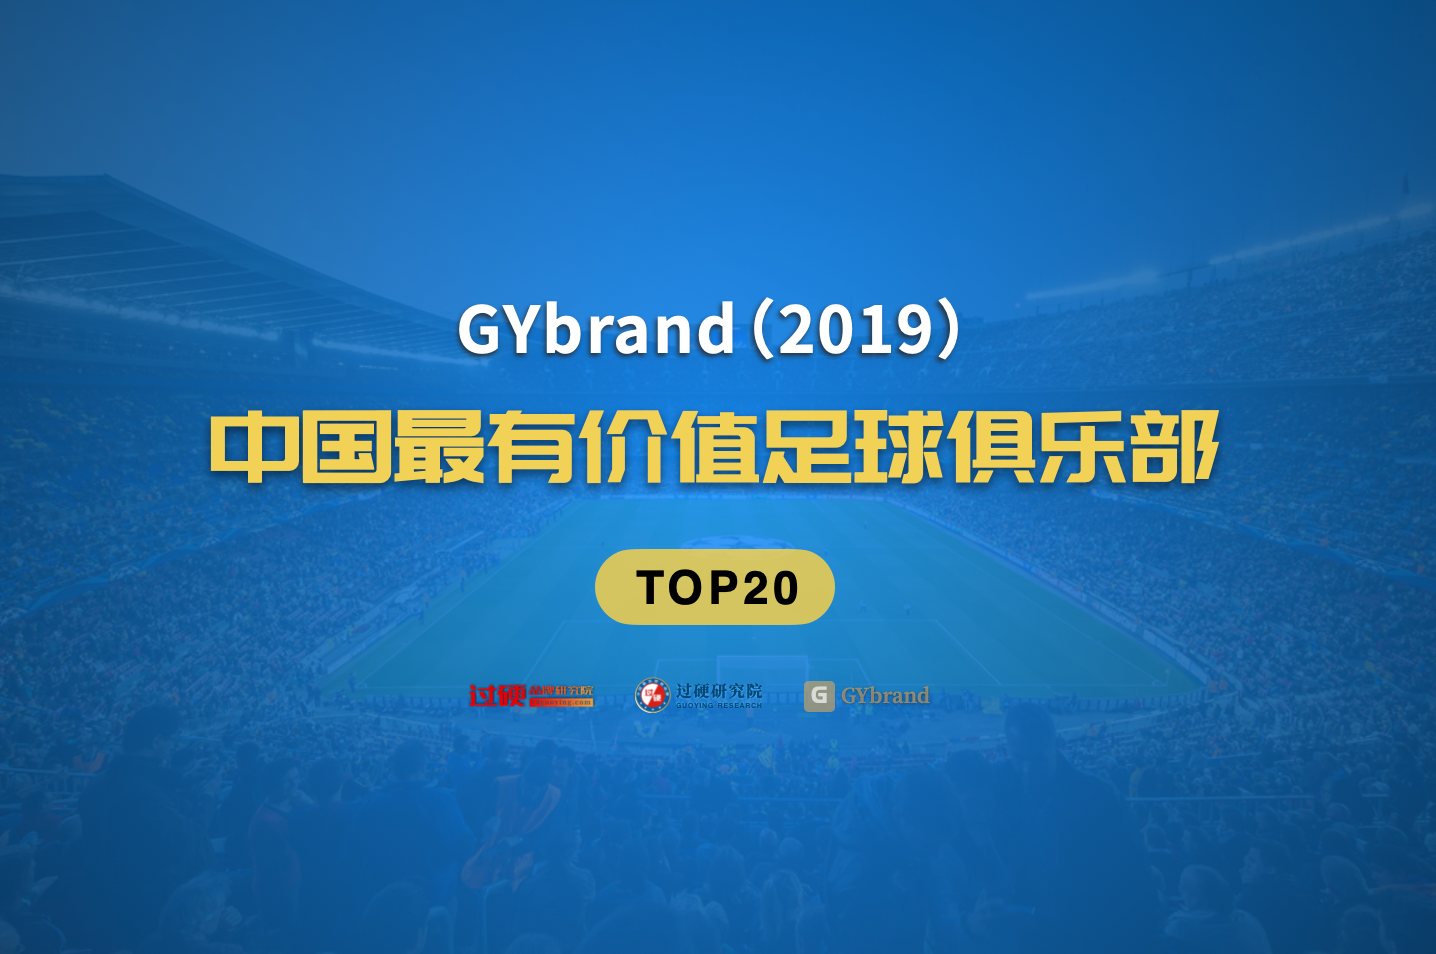 中超品牌价值再创新高 2019最有价值足球俱乐部排行榜发布